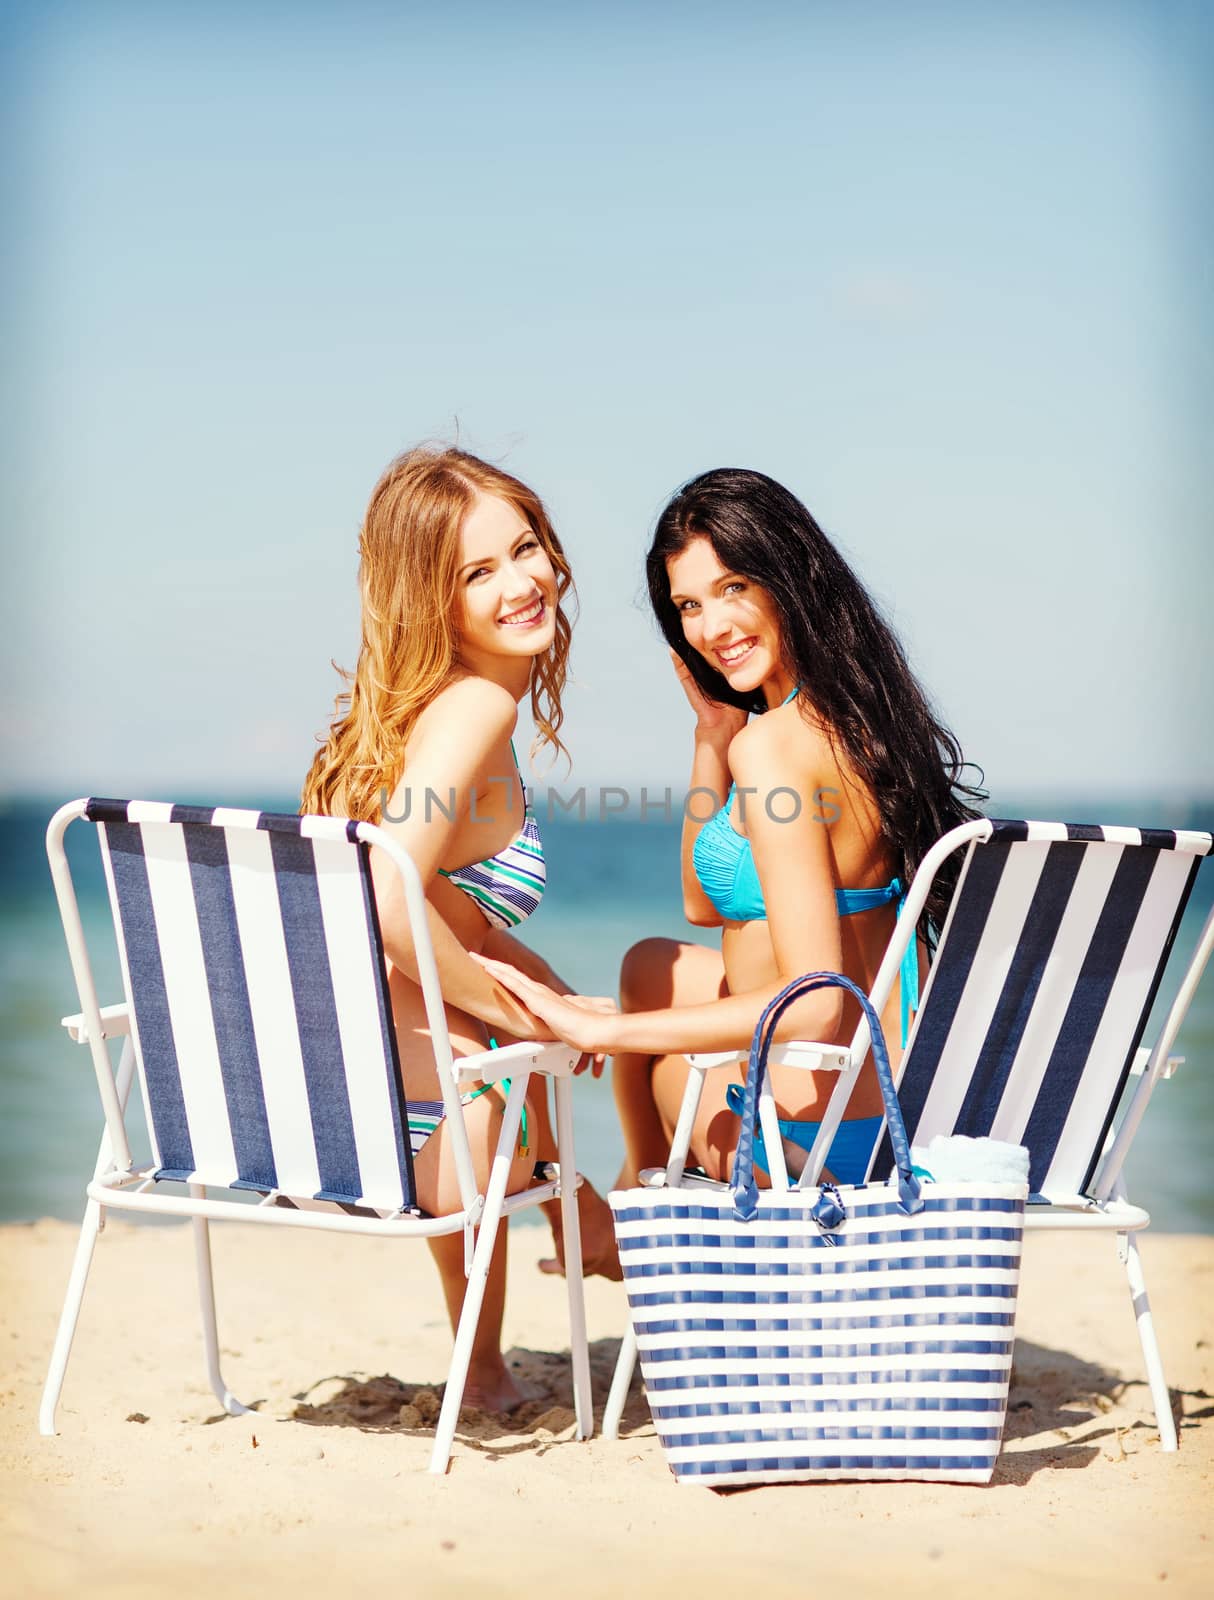 girls sunbathing on the beach chairs by dolgachov